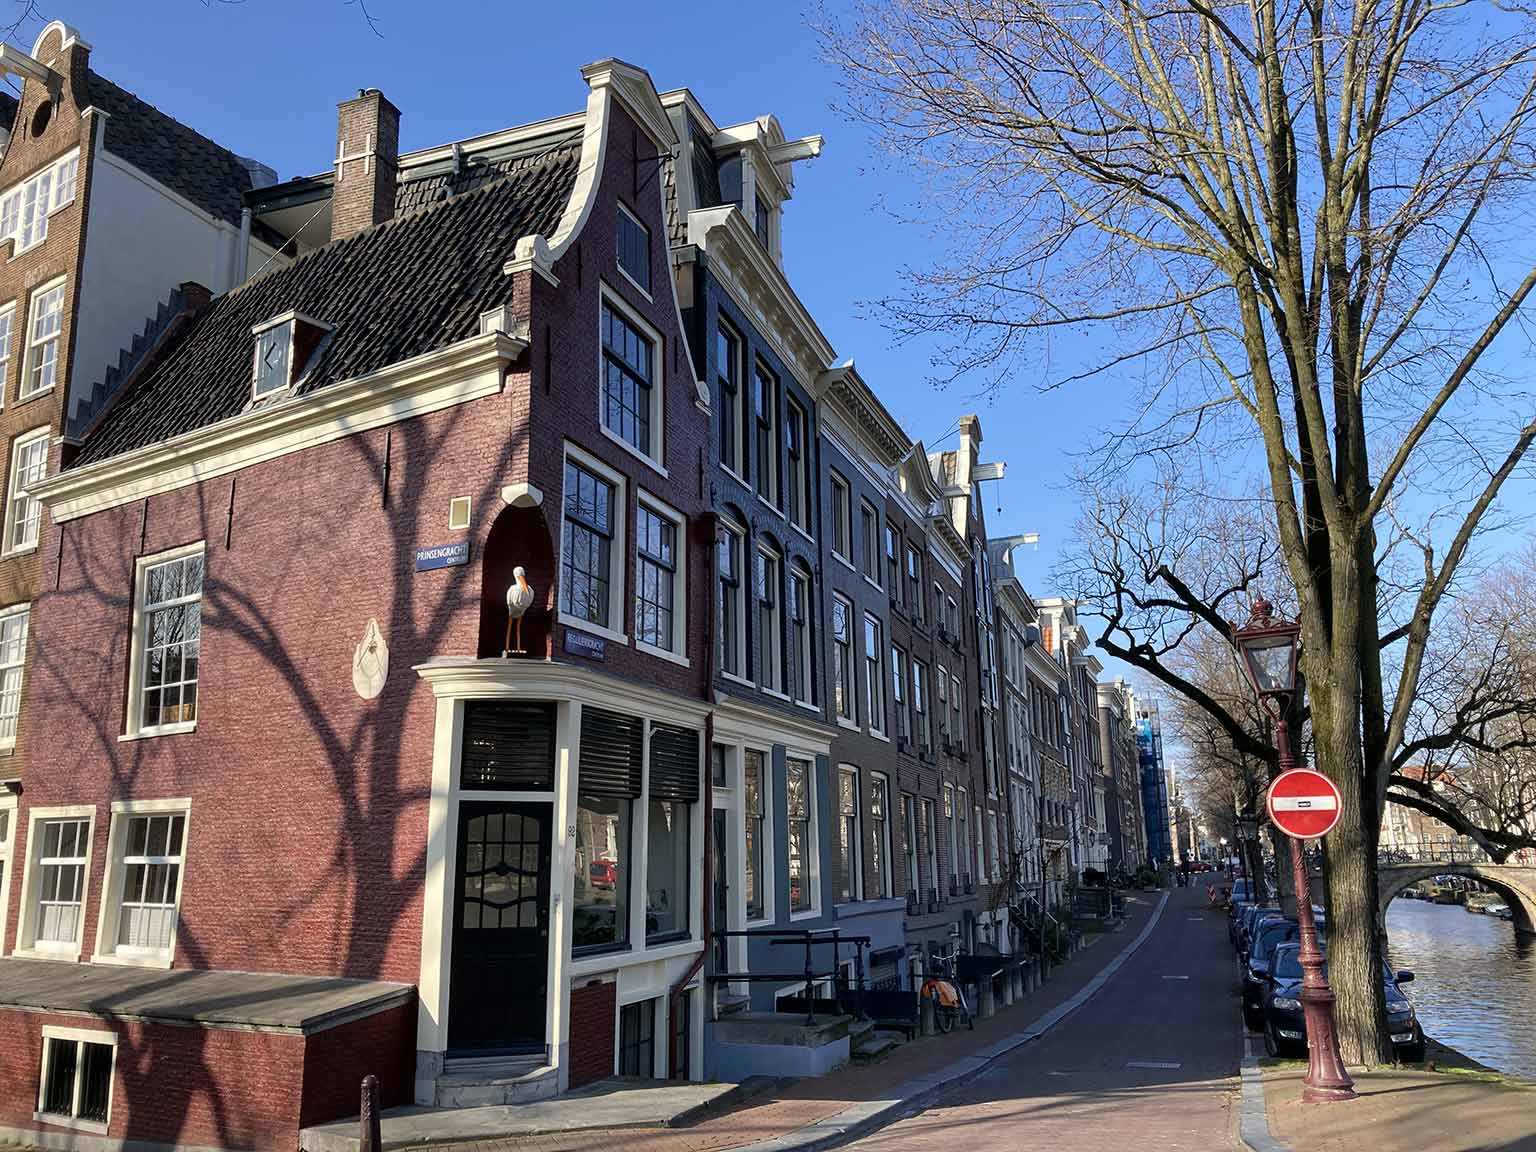 Huis met de Ooievaar (en zonnewijzer), kijkend langs de Reguliersgracht, Amsterdam